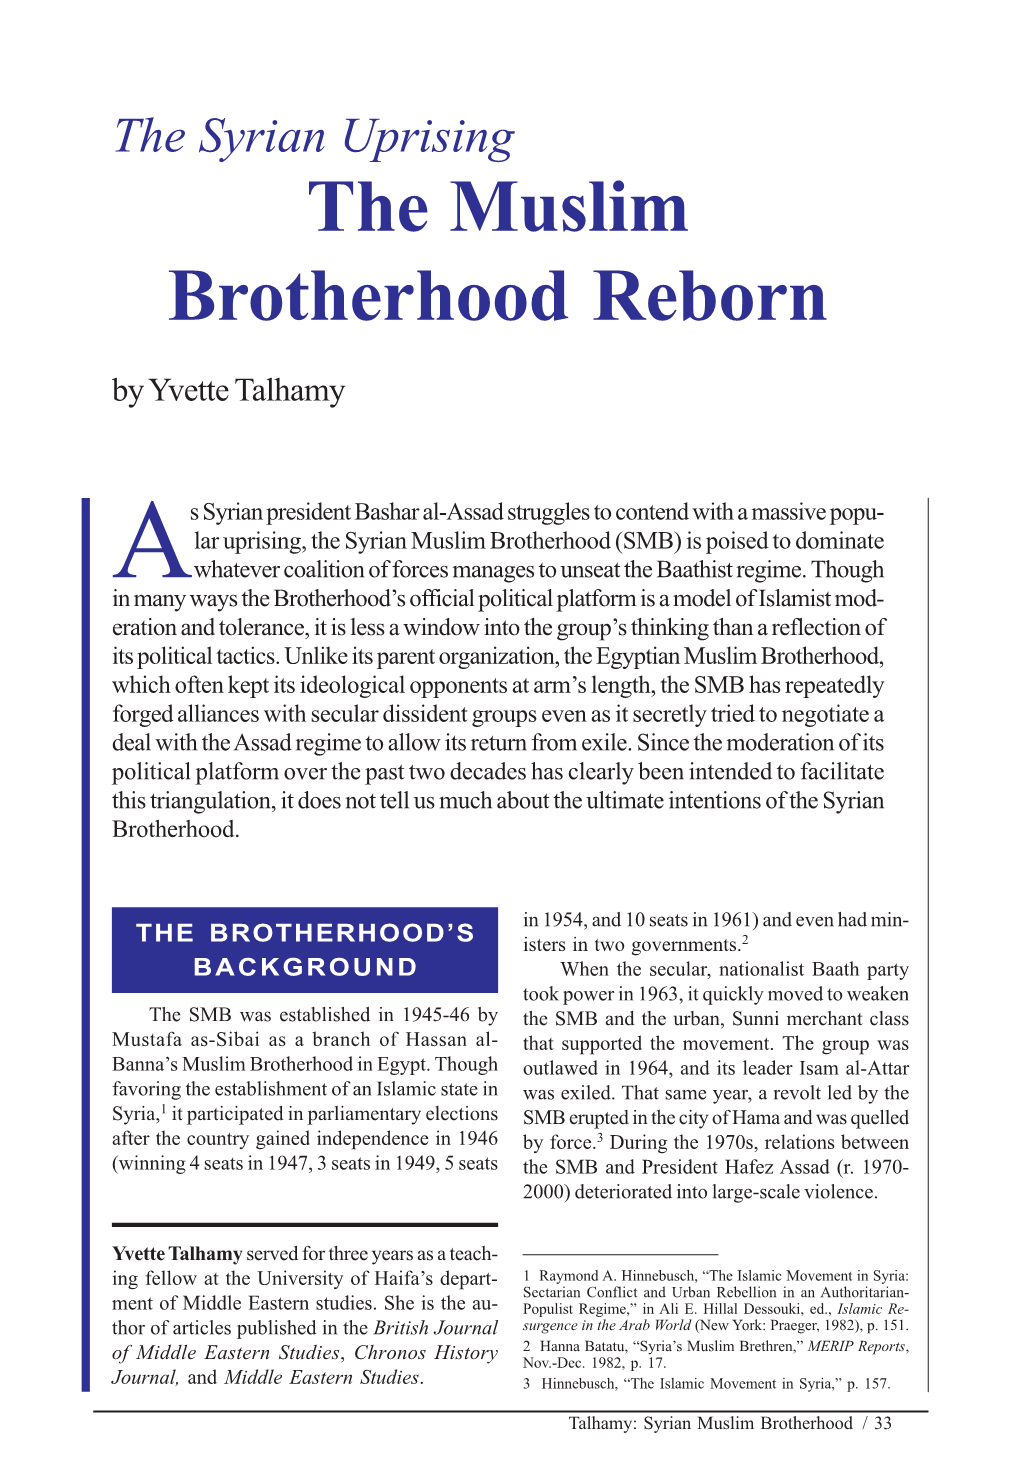 The Muslim Brotherhood Reborn by Yvette Talhamy